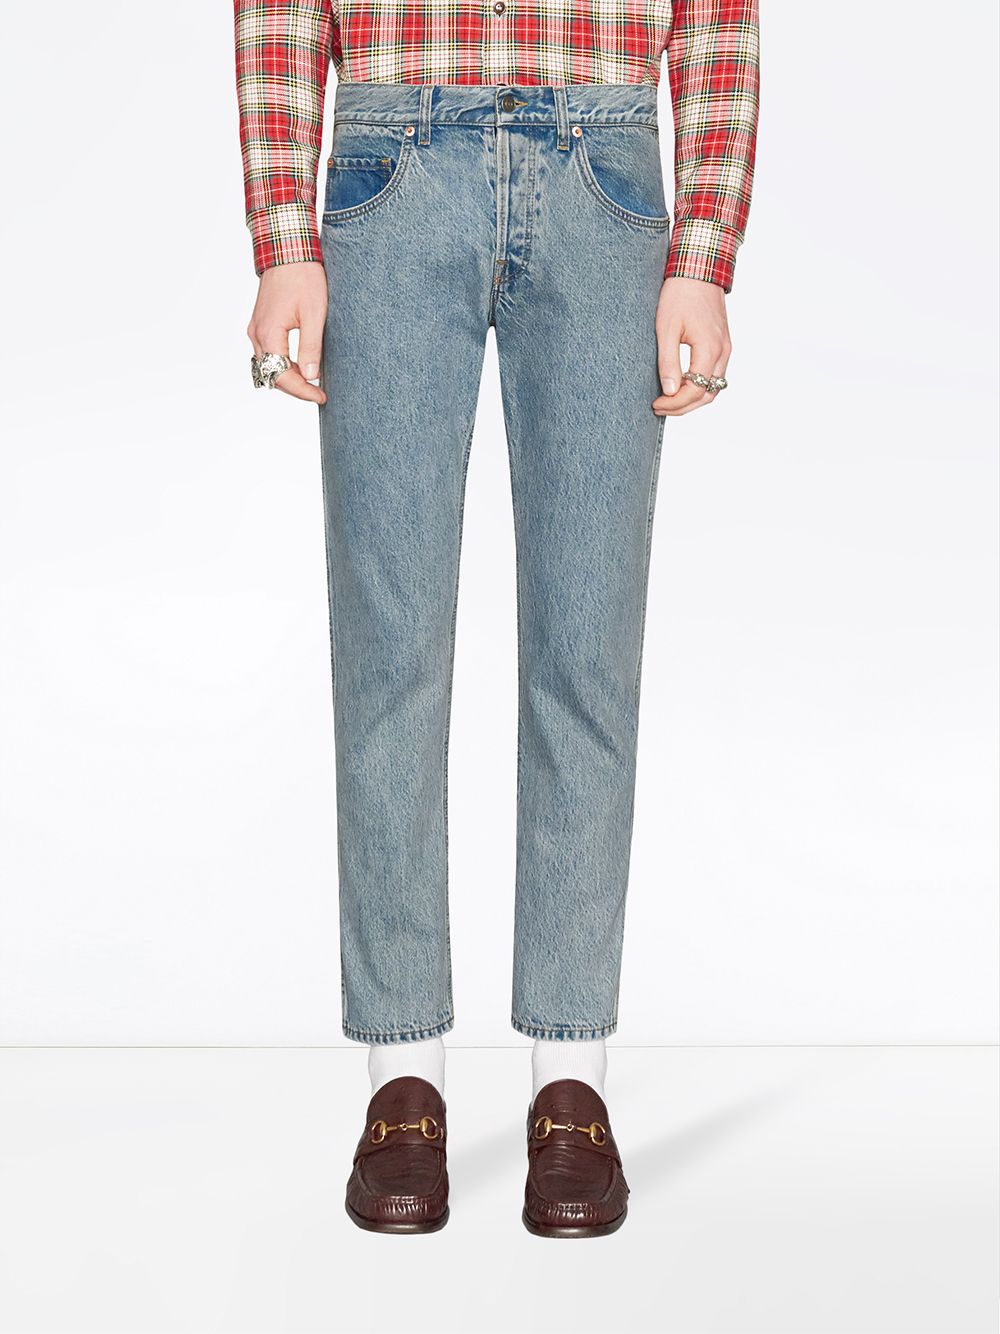 фото Gucci зауженные джинсы с нашивками